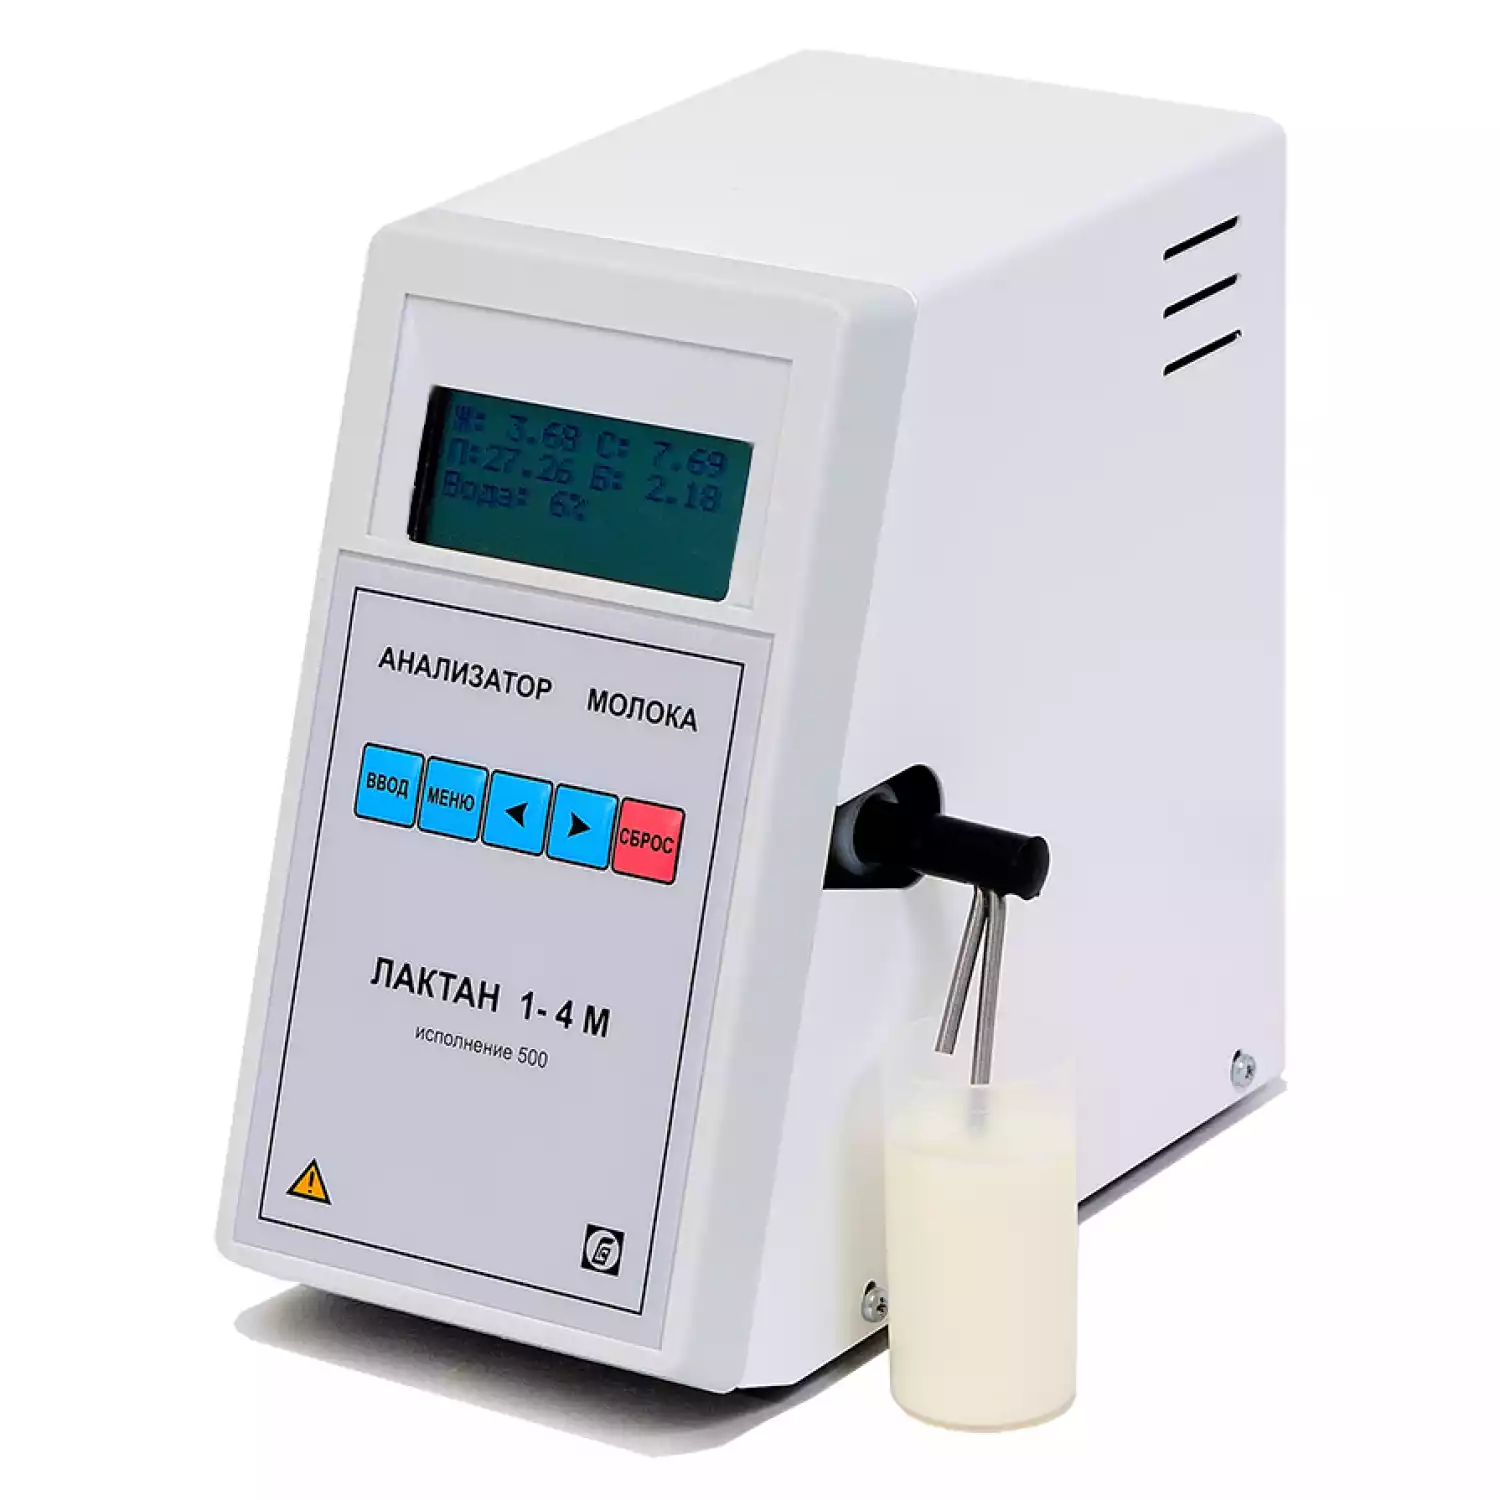 Лактан 1-4M 500 ПРОФИ анализатор качества молока - 1